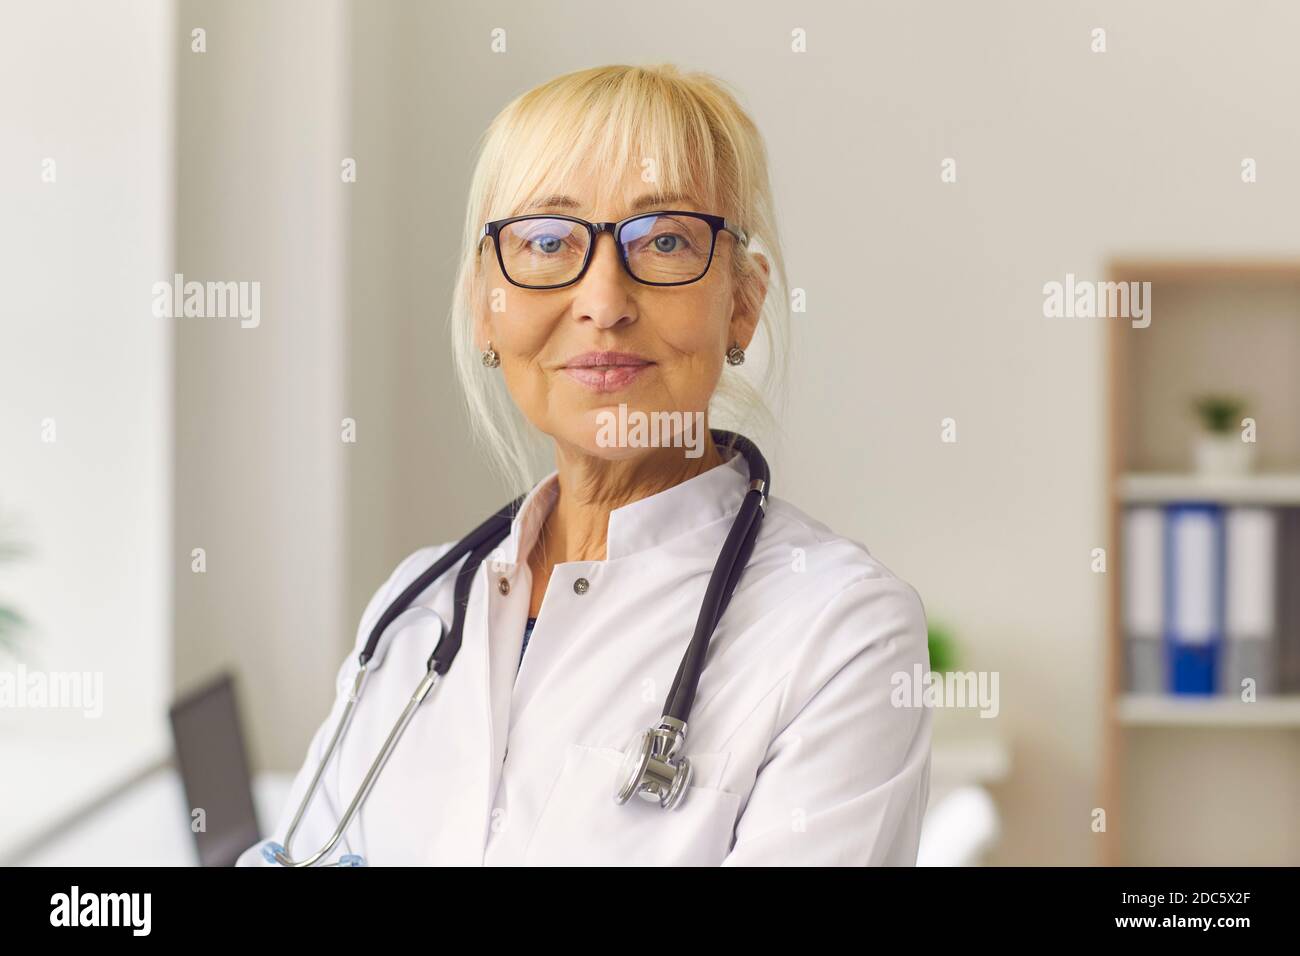 Nahaufnahme Porträt einer erfahrenen freundlichen Senior Doctor Frau Blick auf die Kamera. Stockfoto